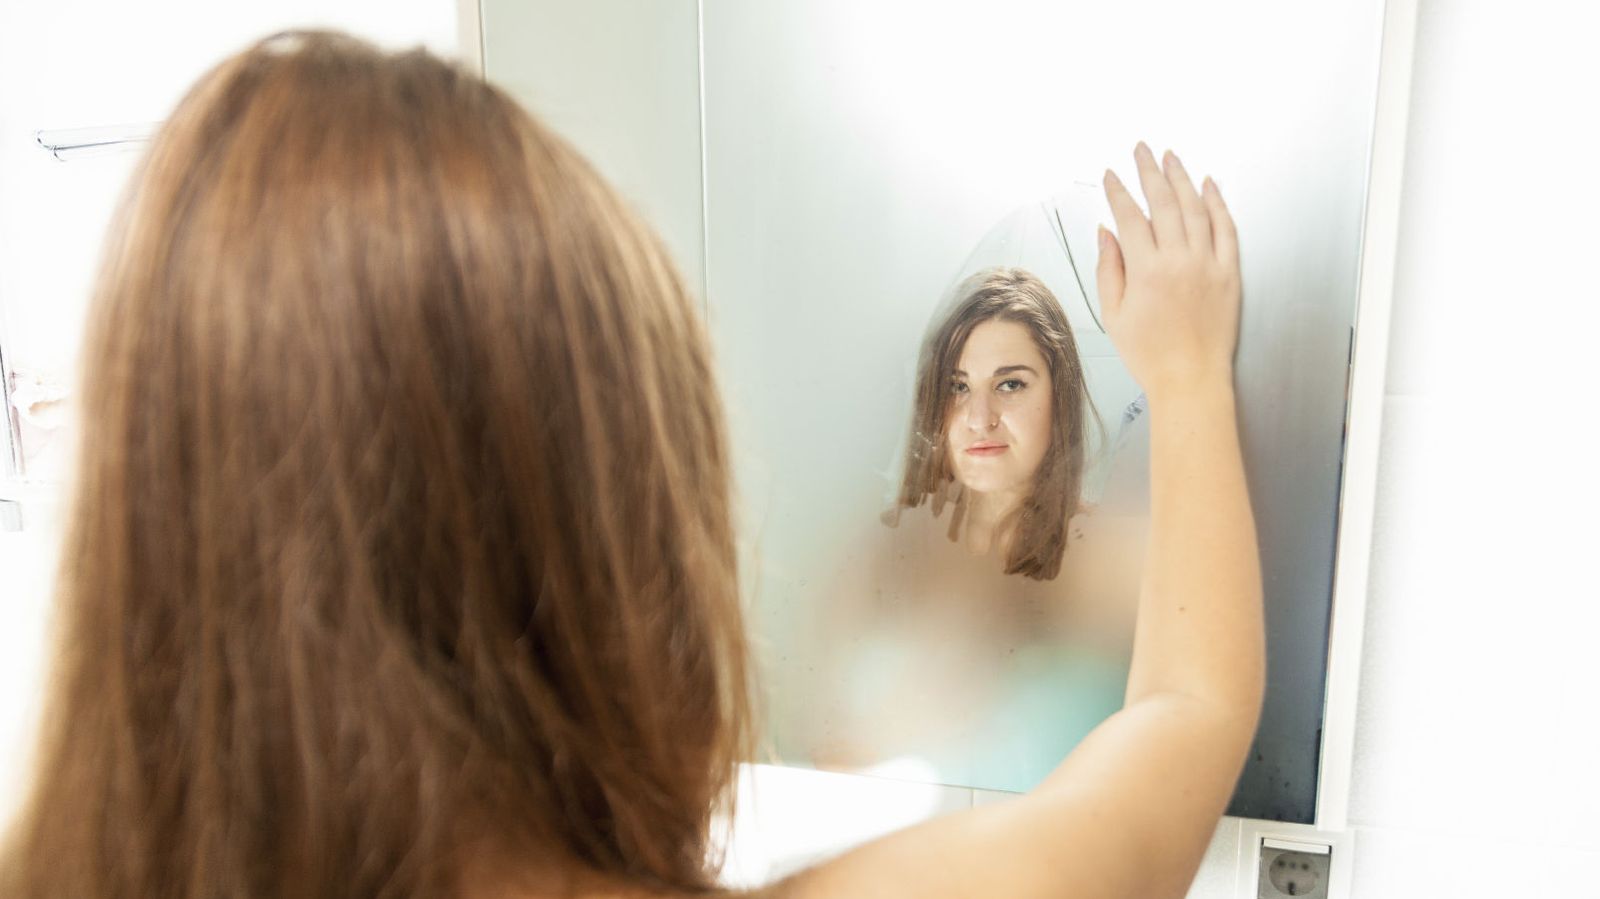 Foto: ¿Será quitar el vaho del espejo con la mano? (iStock)